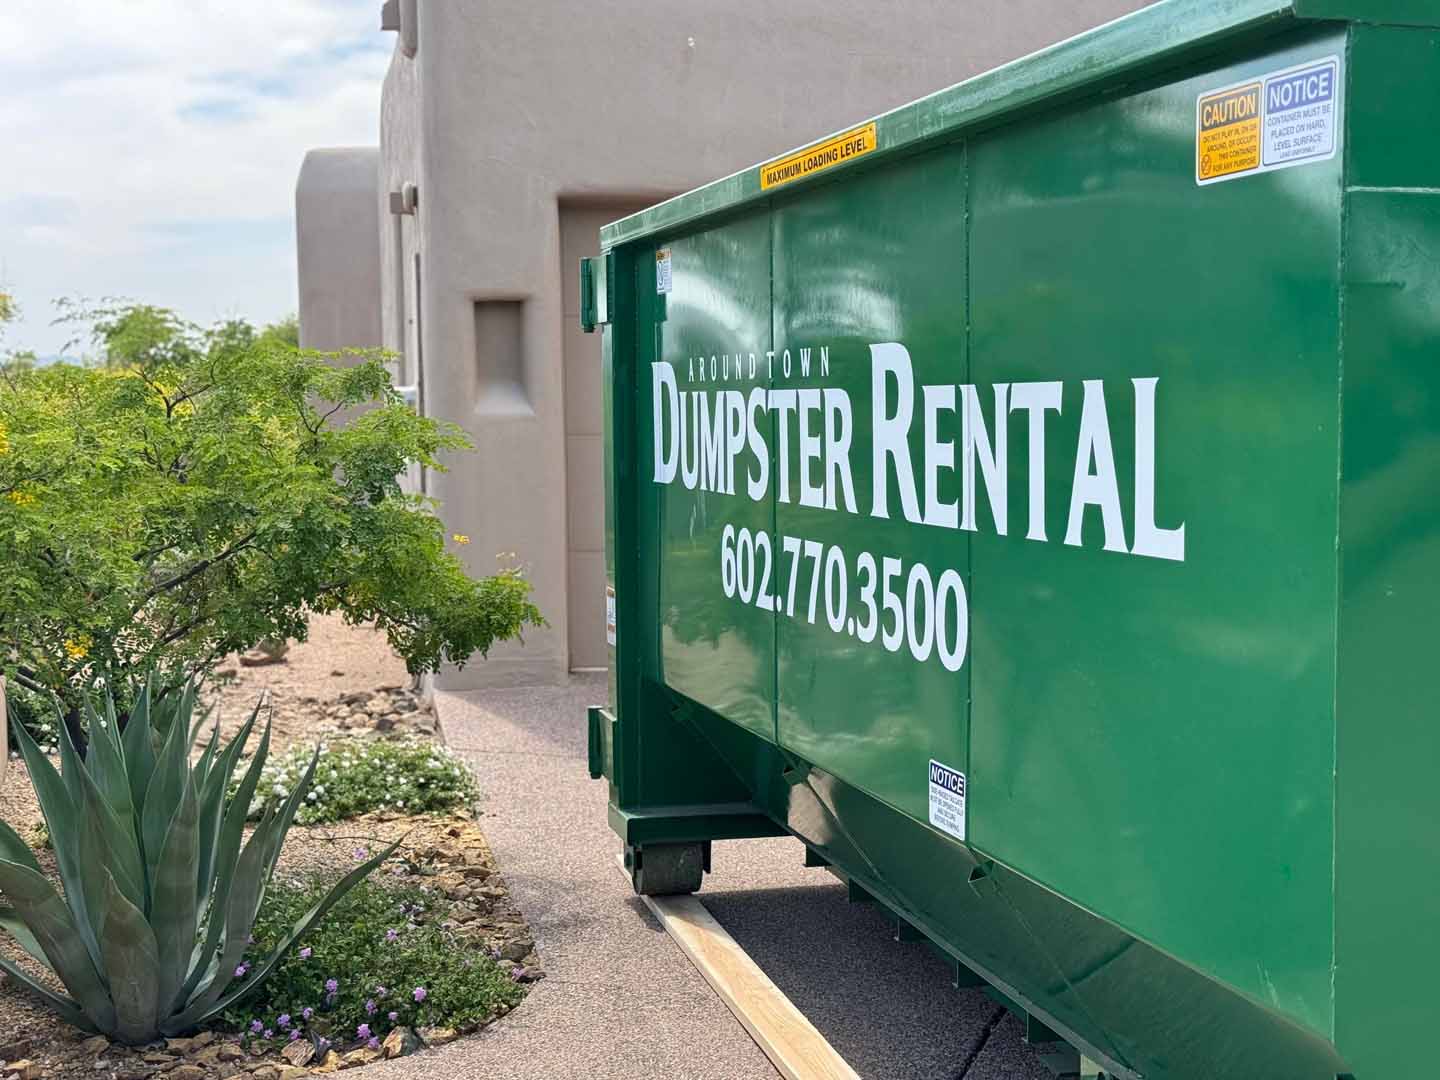 Around Town Dumpster Rental The Best Dumpster Rental services in Phoenix